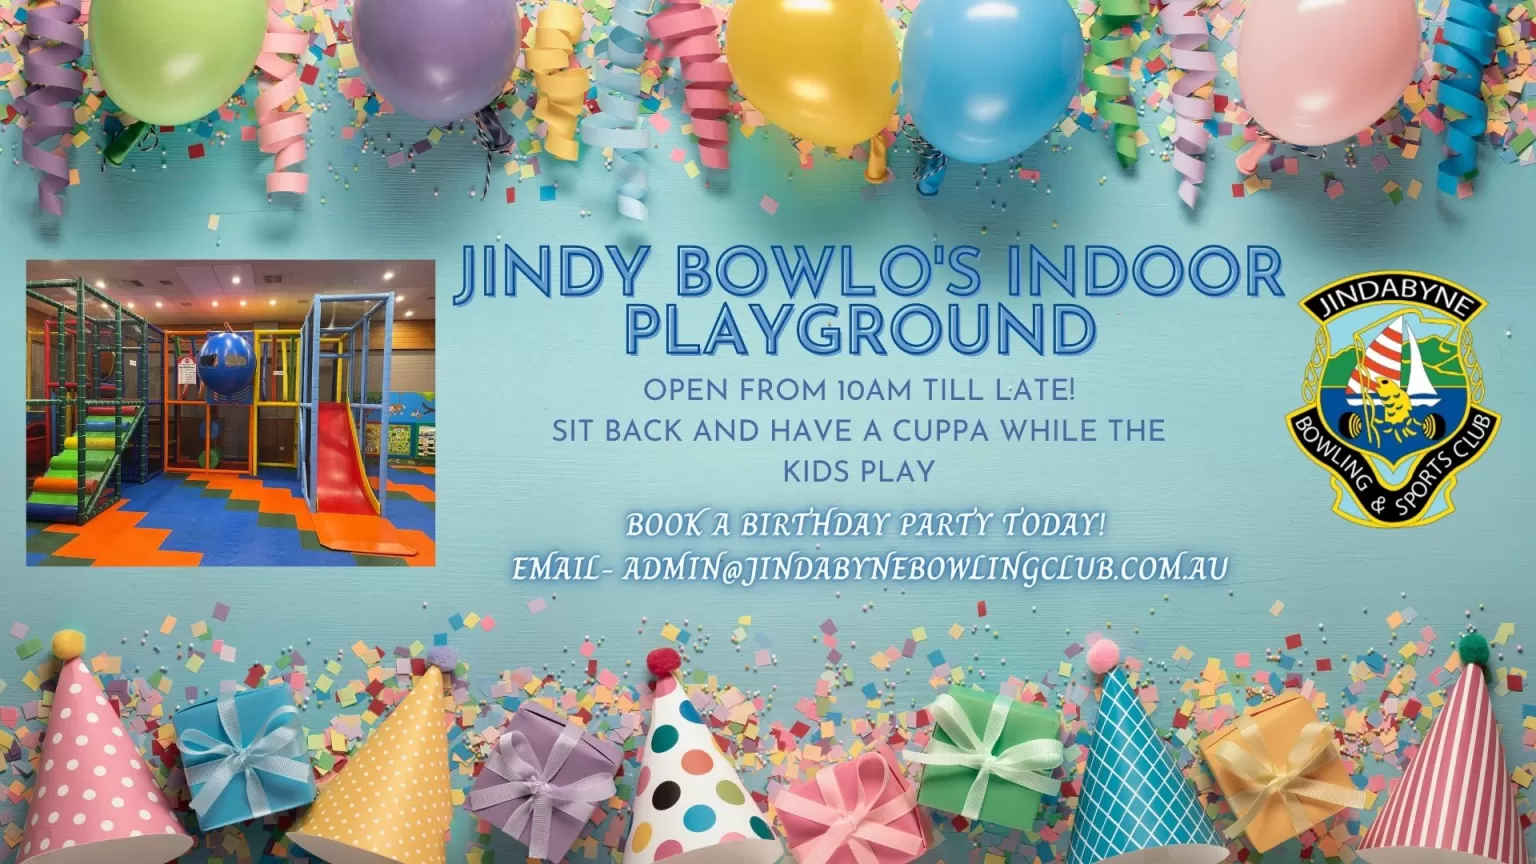 Jindabyne Bowlo's Indoor Playground image